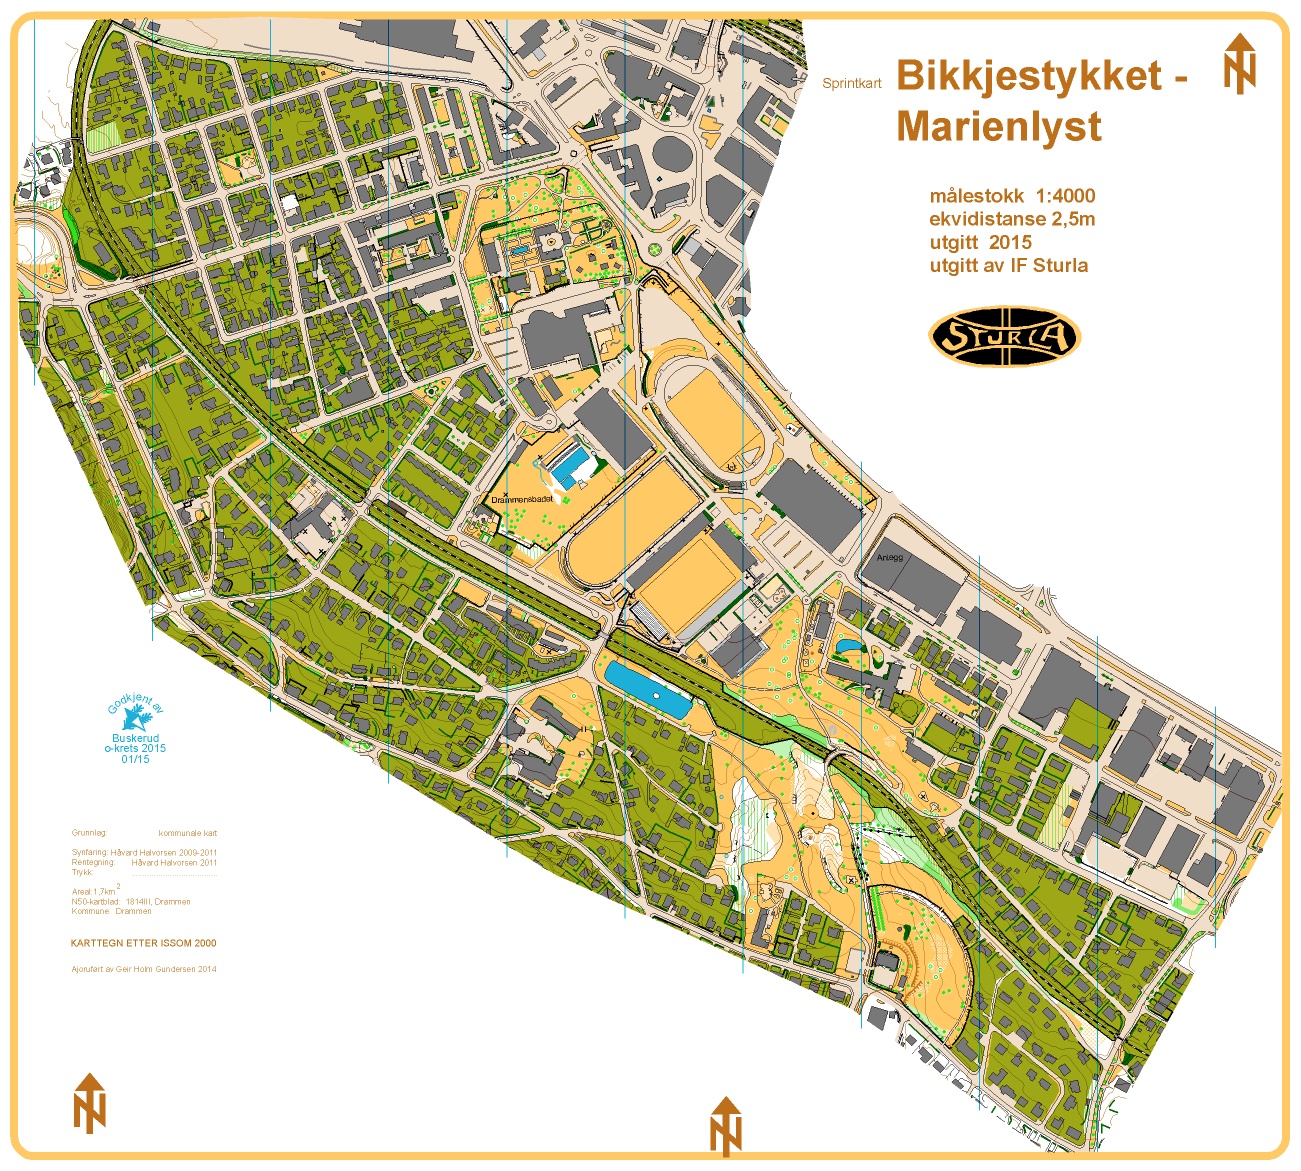 Bikkjestykket-Marienlyst (01-05-2015)